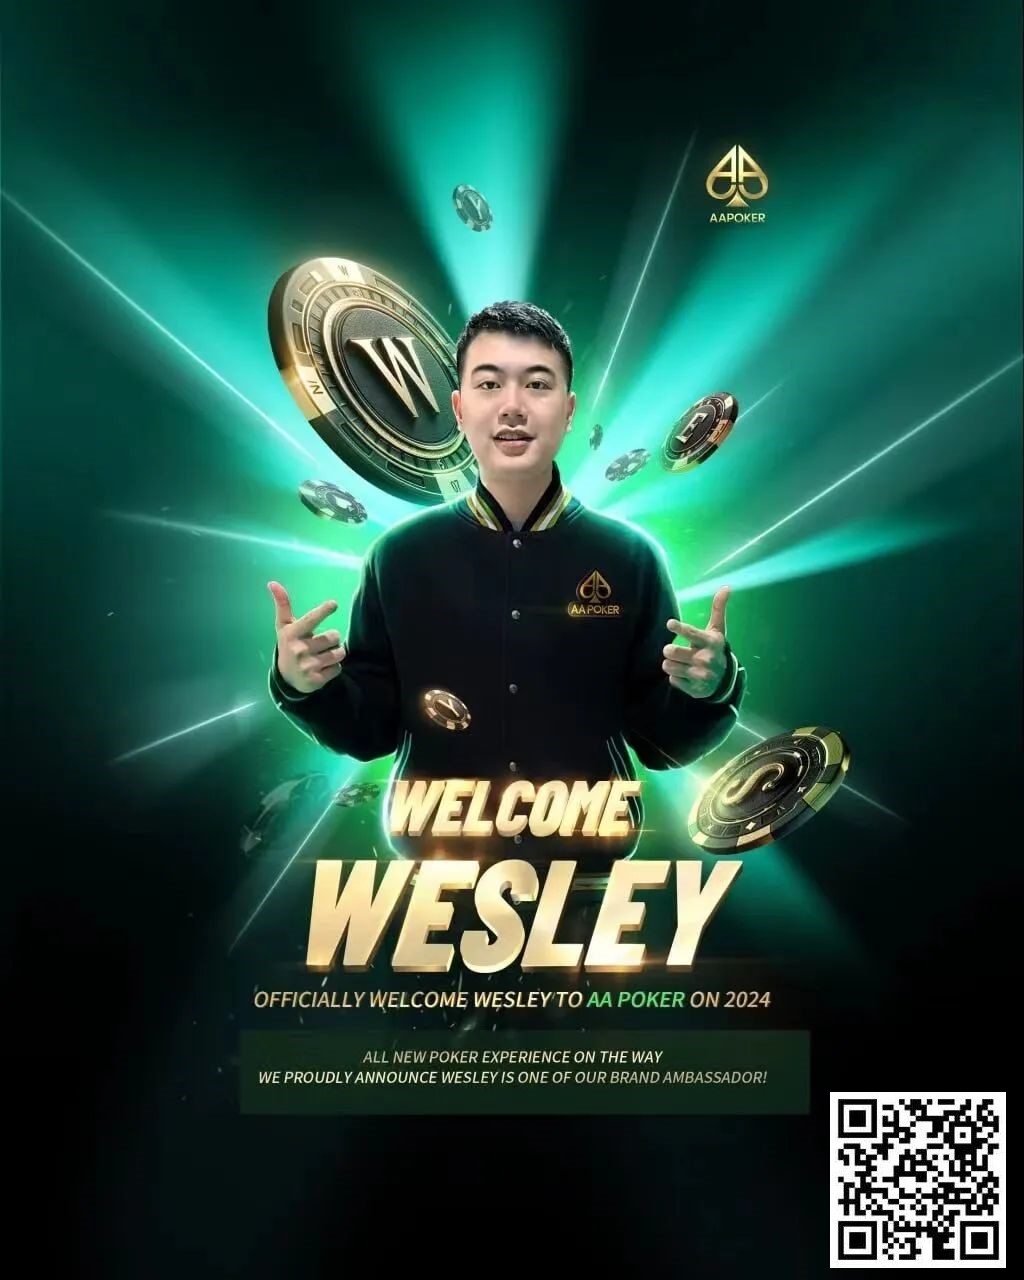 【EV扑克】纵横德扑江湖的勇士 年度风云人物Wesley 成某知名扑克品牌代言人